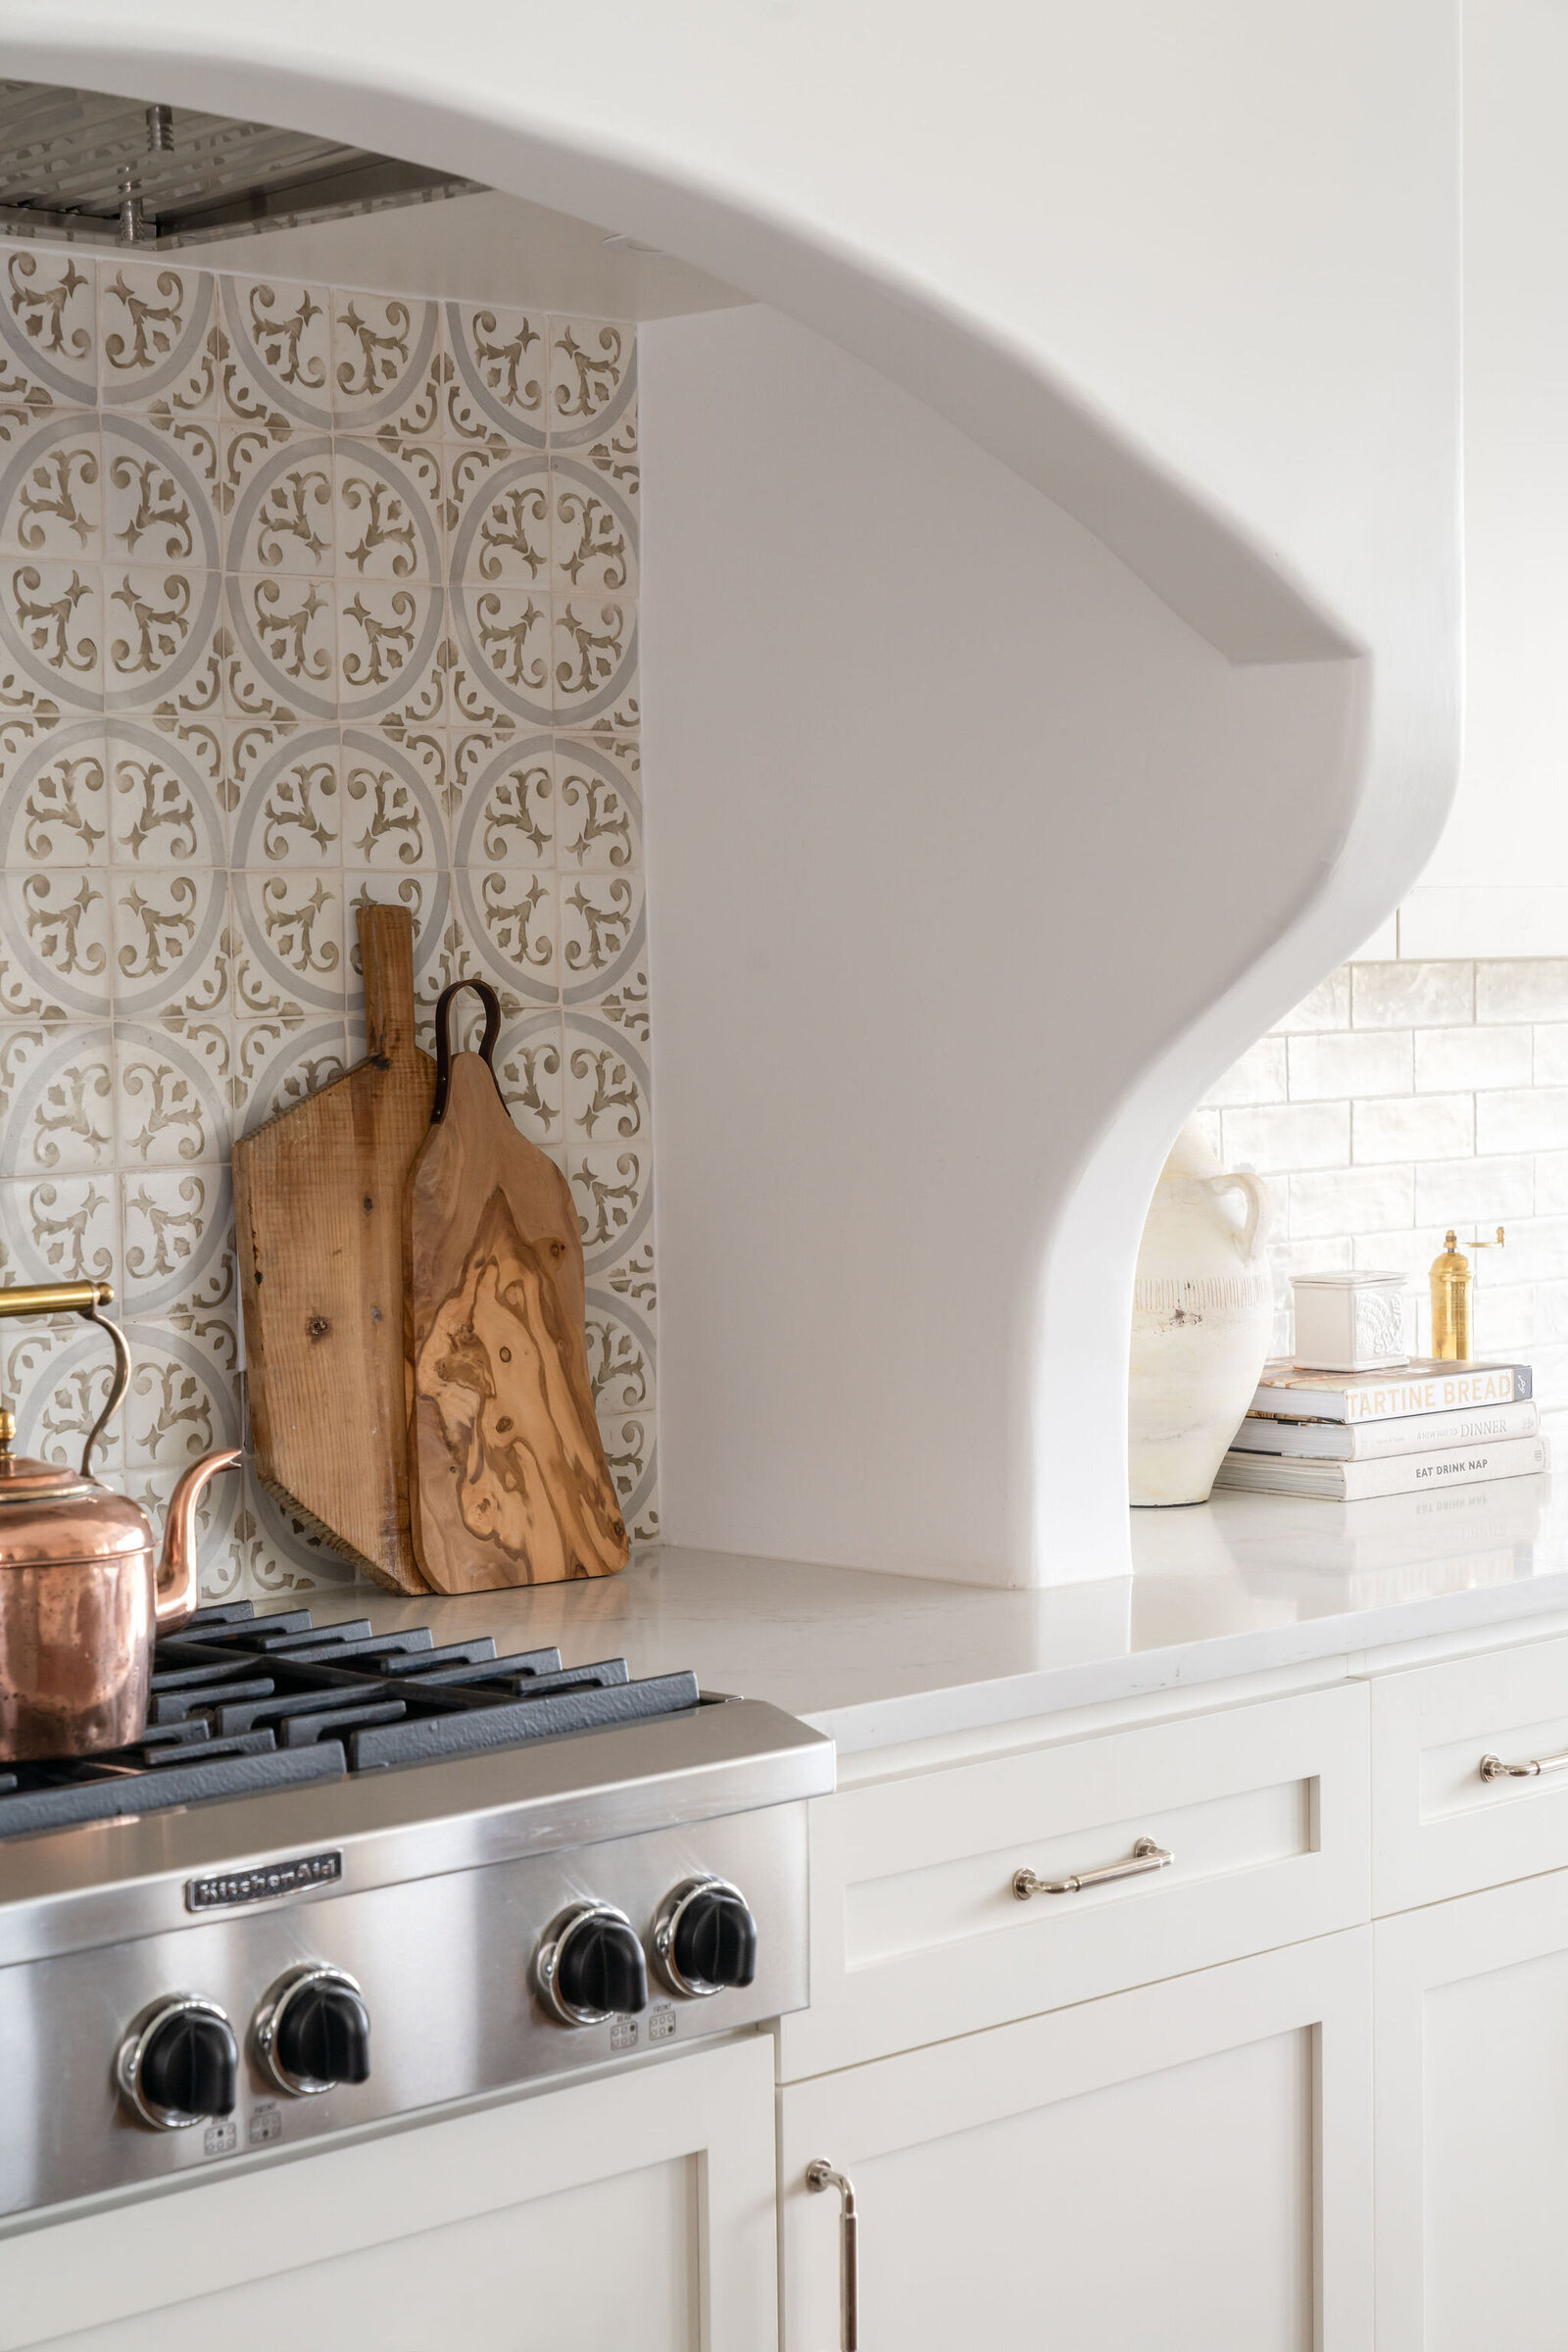 Nuela_Designs_Patterned_Backsplash_Tile_Kitchen_Interior_Design